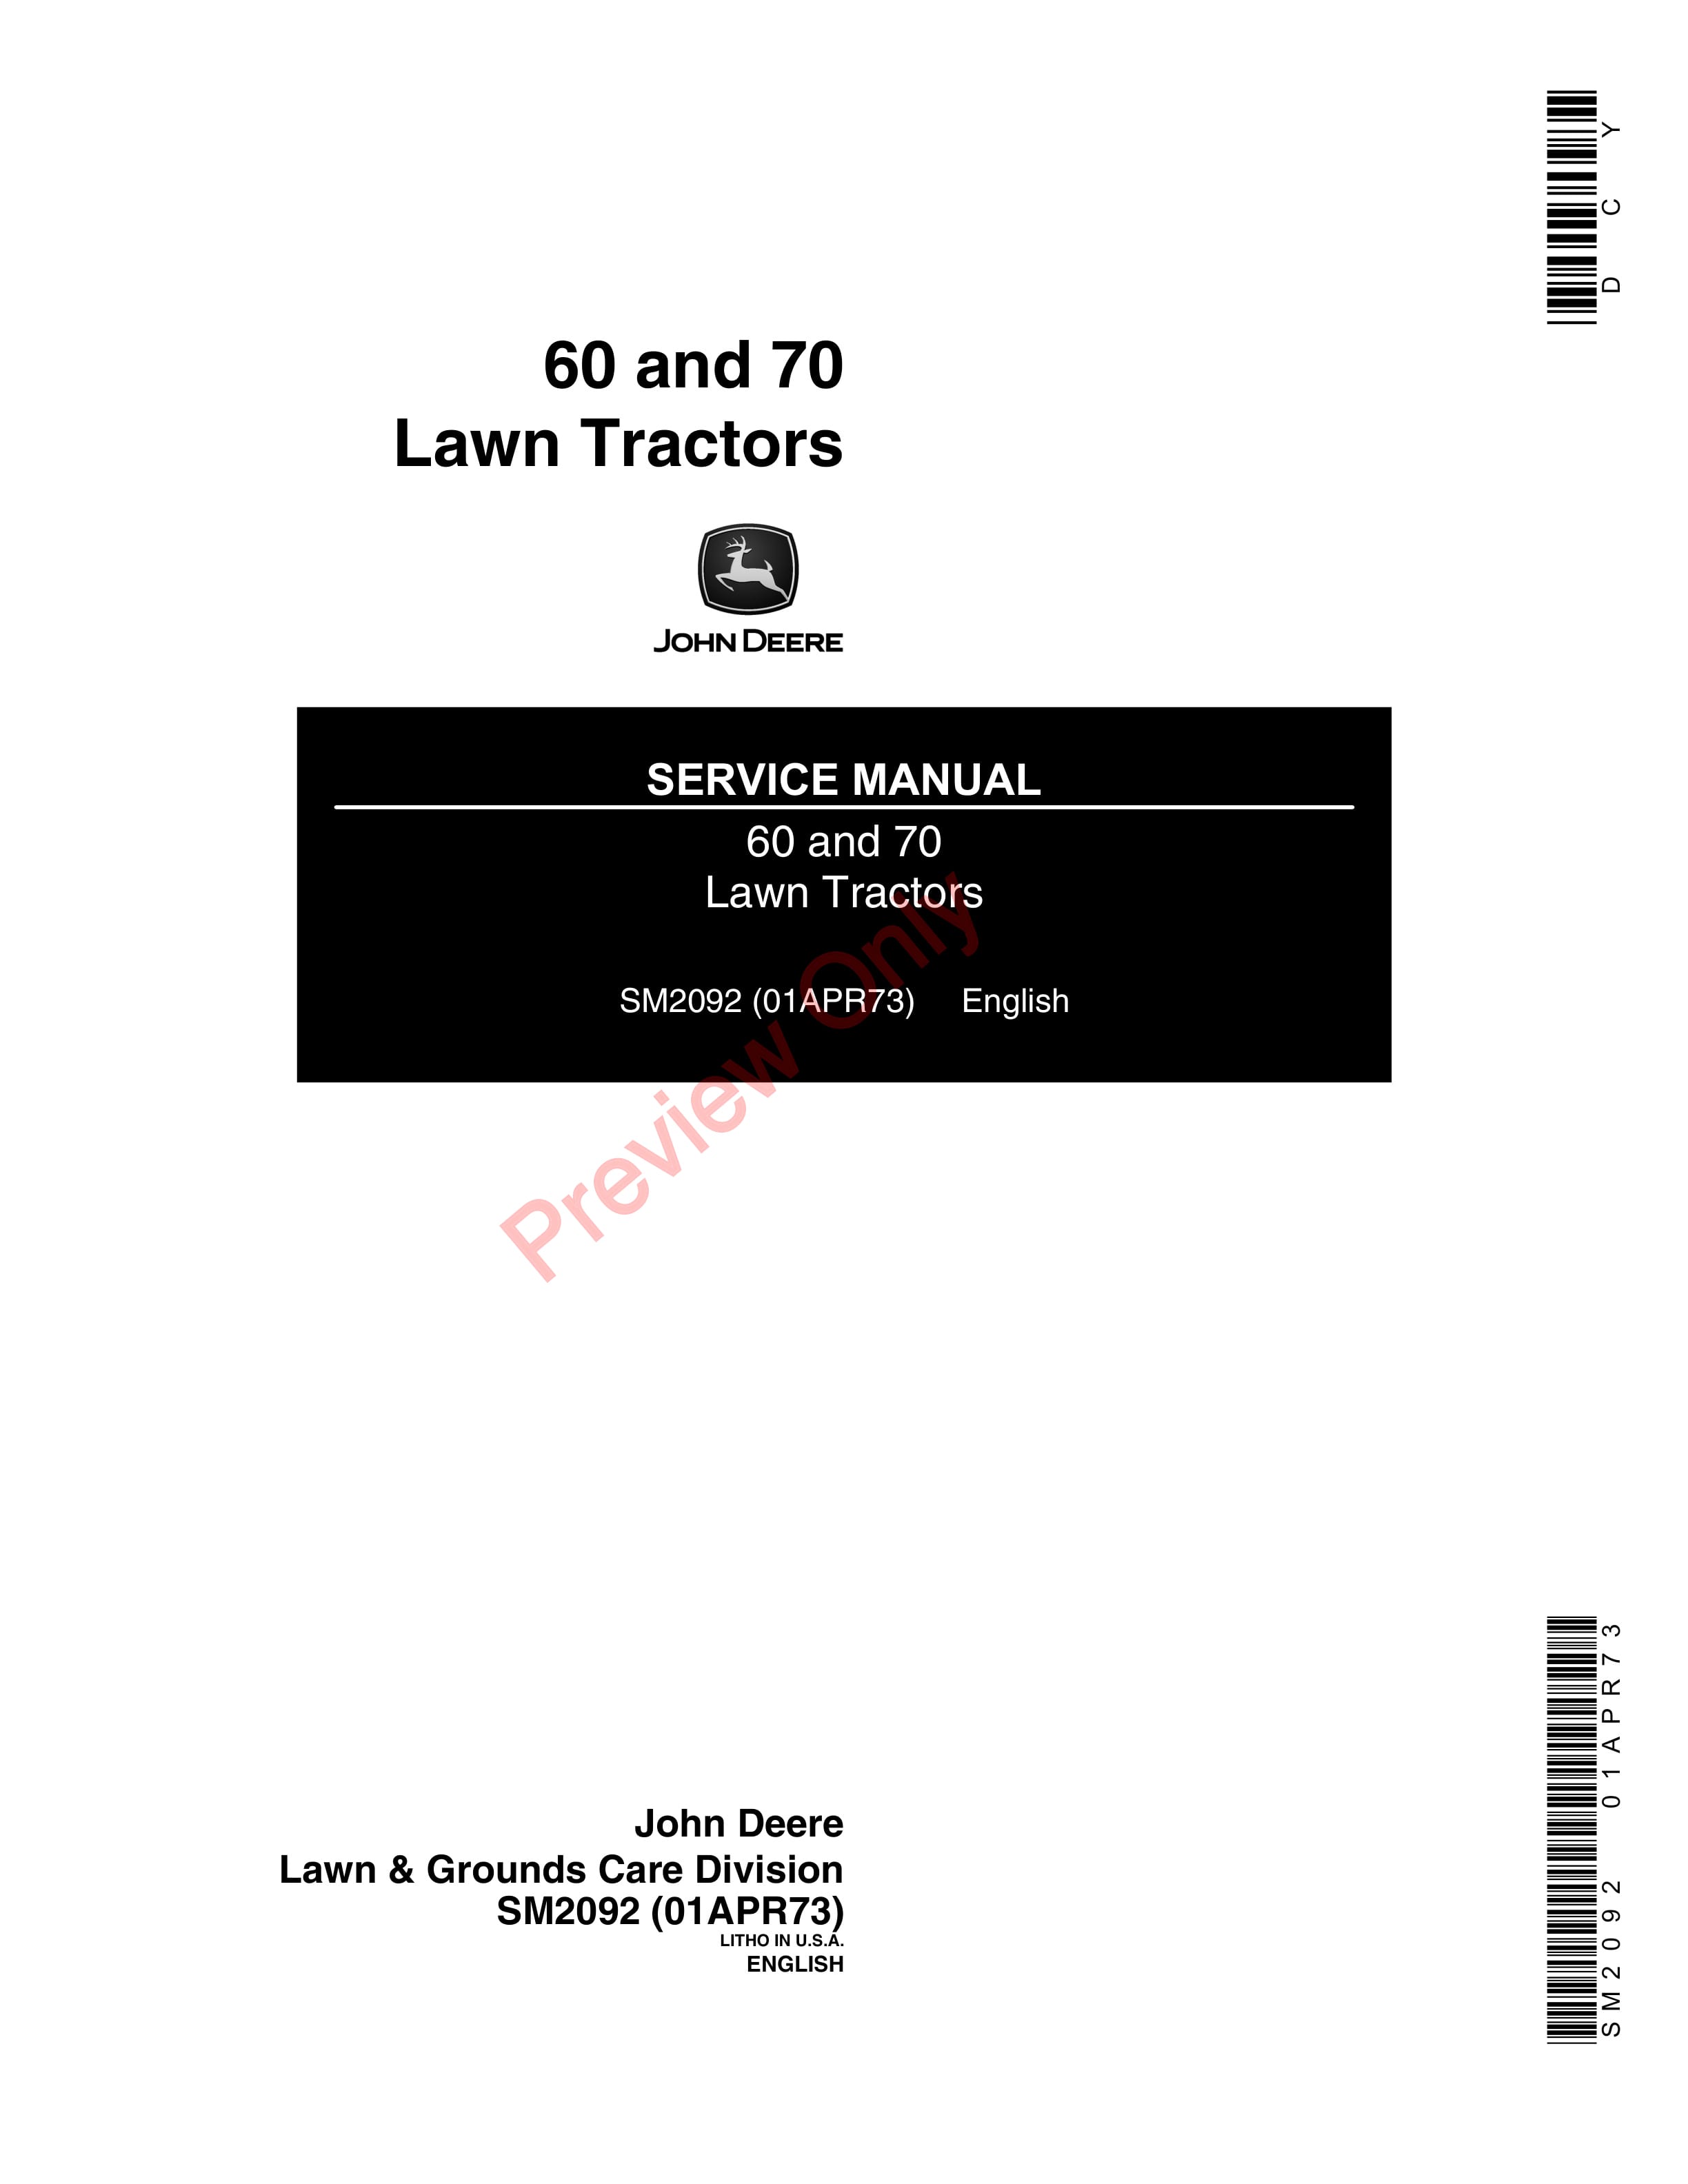 John Deere 60 and 70 Lawn Tractors Service Manual SM2092 01APR73-1